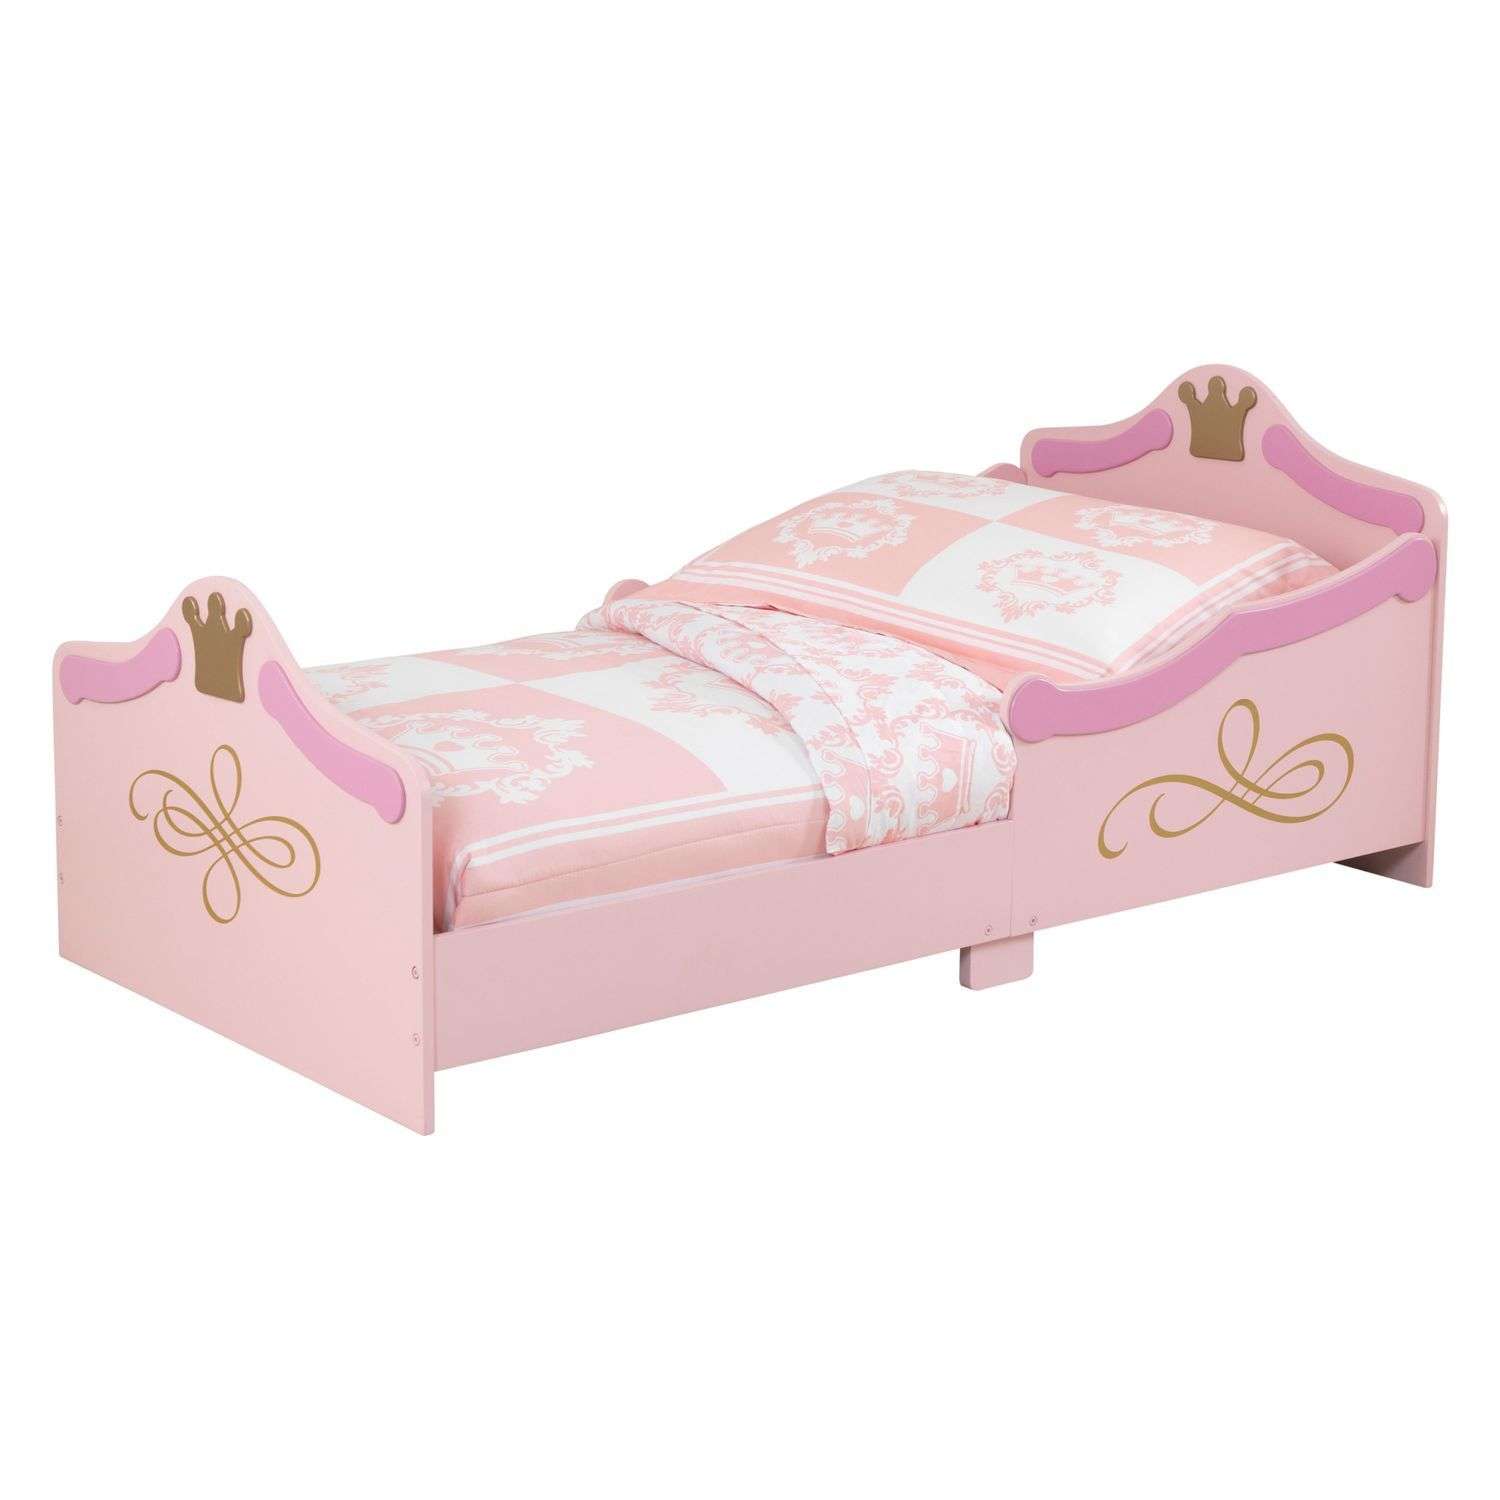 Кровать детская KidKraft Принцесса 76139_KE - фото 2